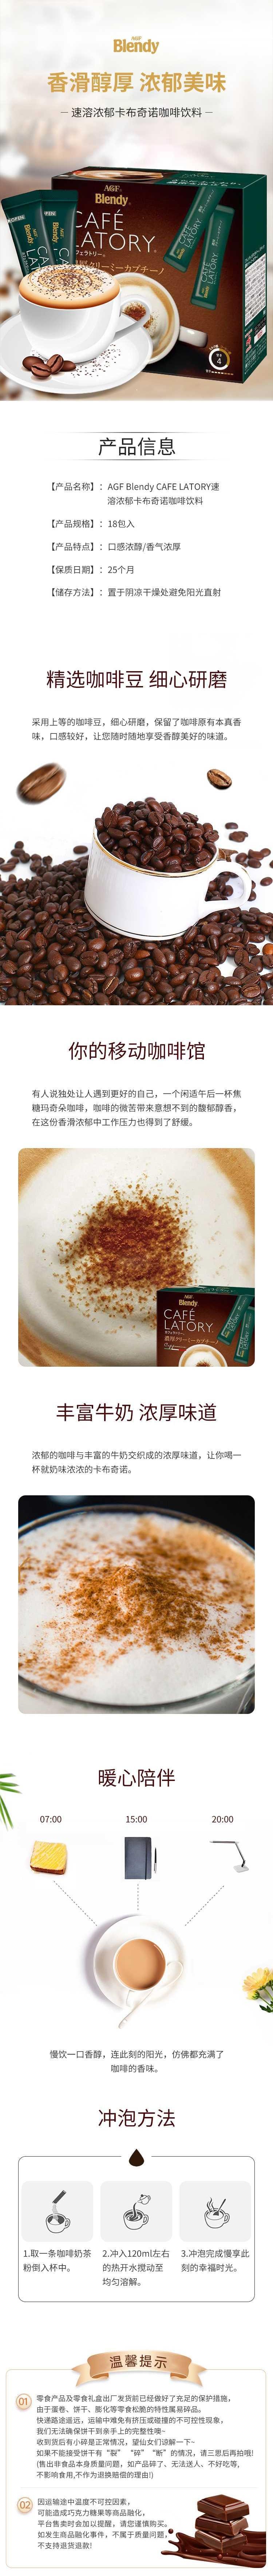 【日本直邮】AGF Blendy CAFE LATORY速溶浓郁卡布奇诺咖啡18包入